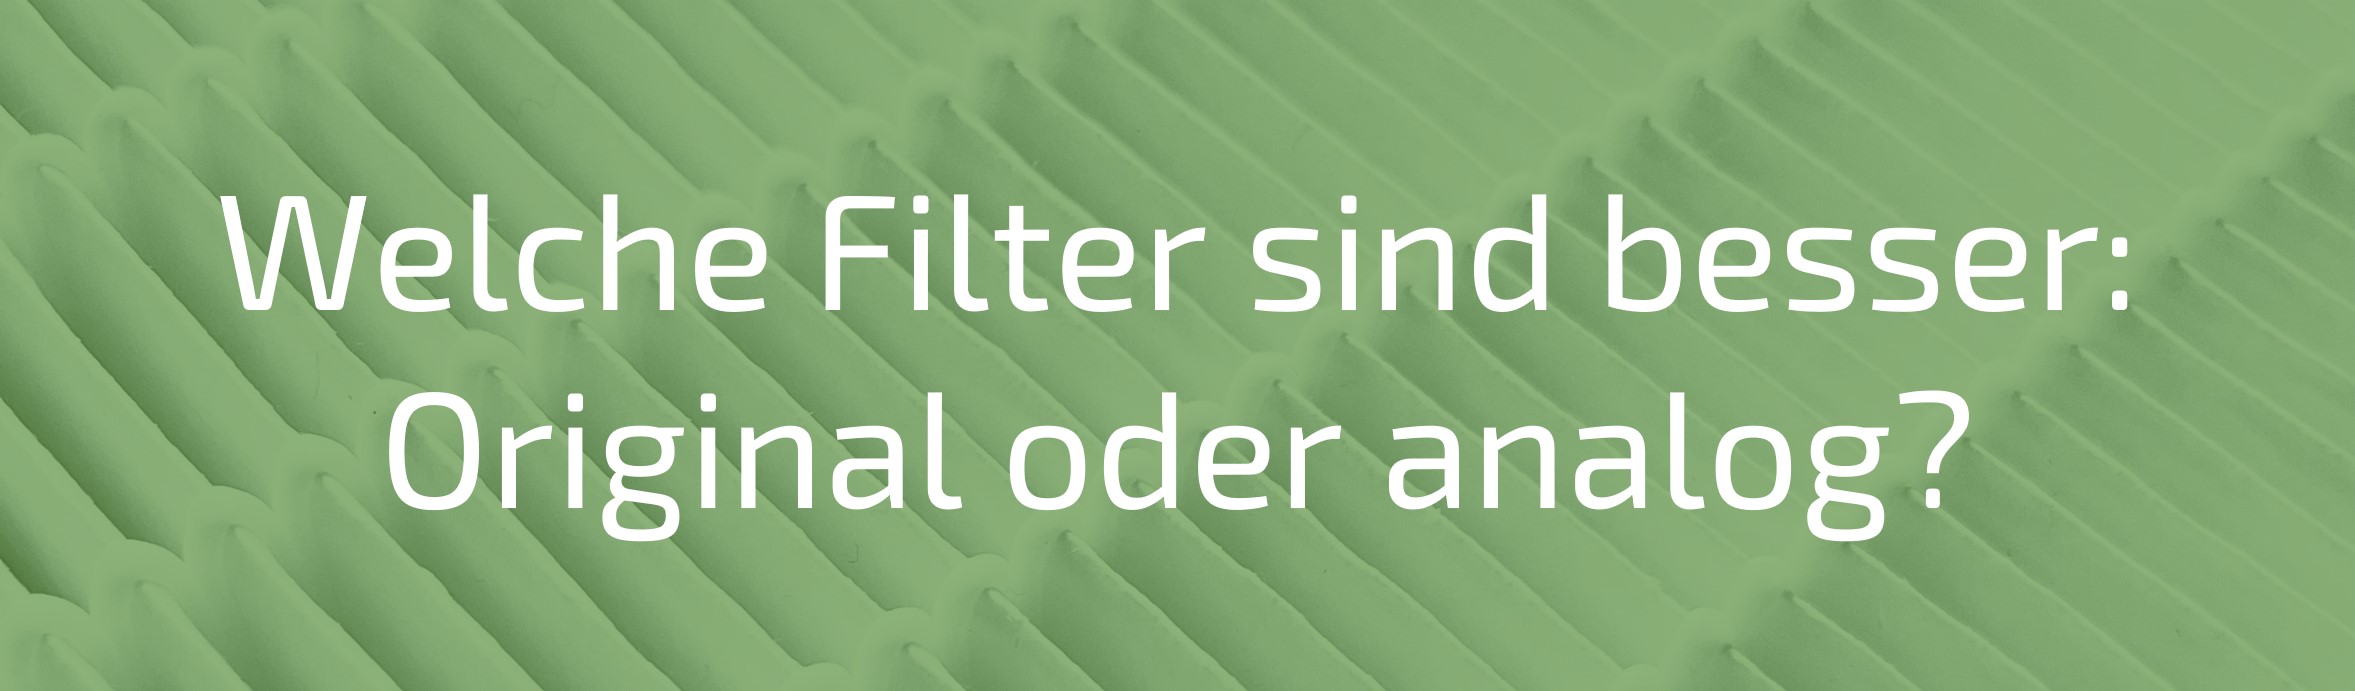 Welche originalen oder analogen Filter sind besser?